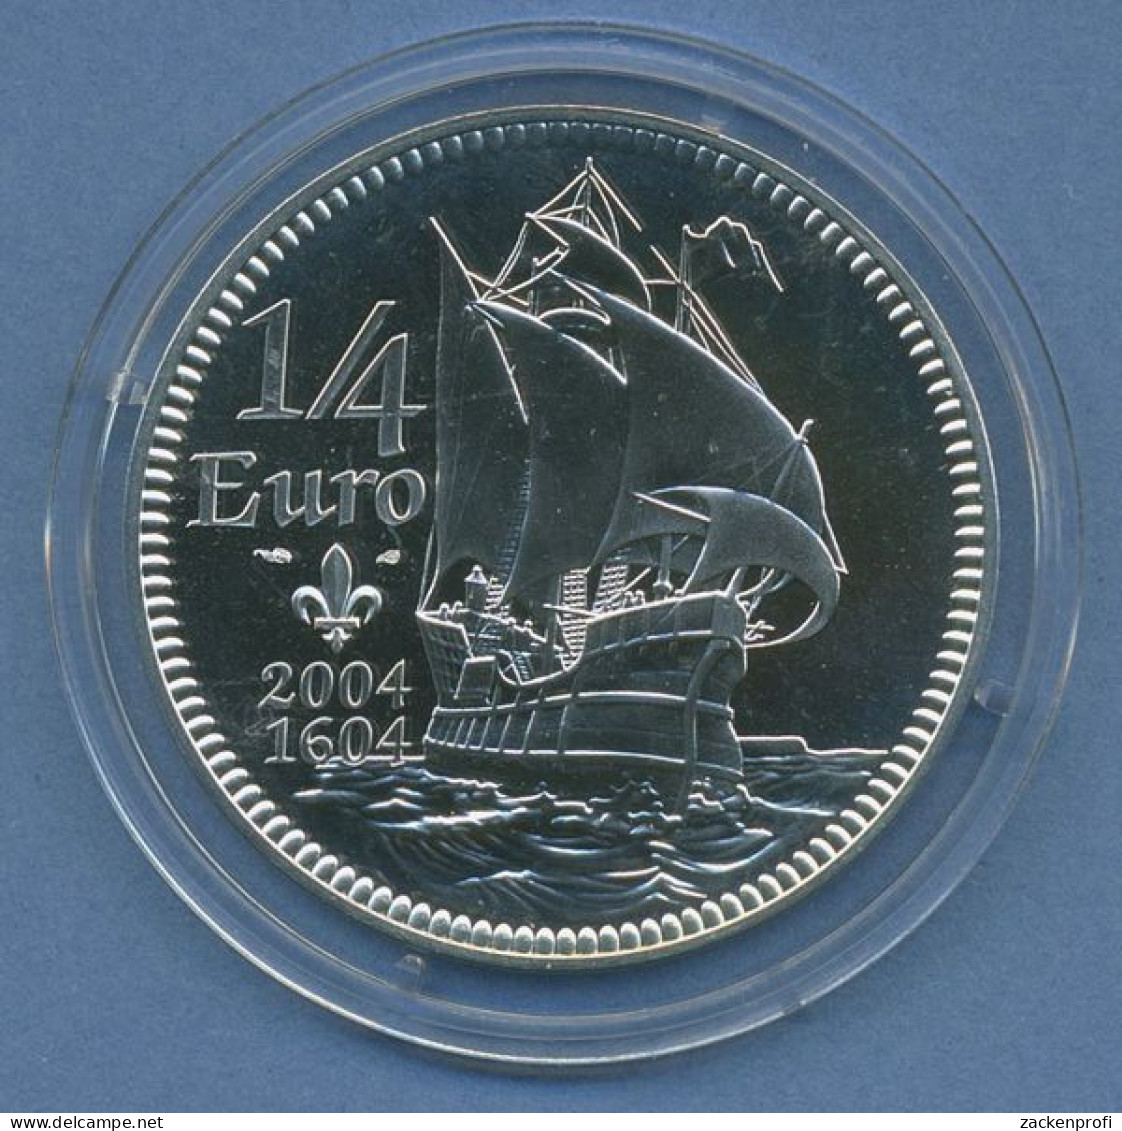 Frankreich 1/4 Euro 2004, Silber, Segelschiff KM 1372 St In Kapsel (m4273) - France